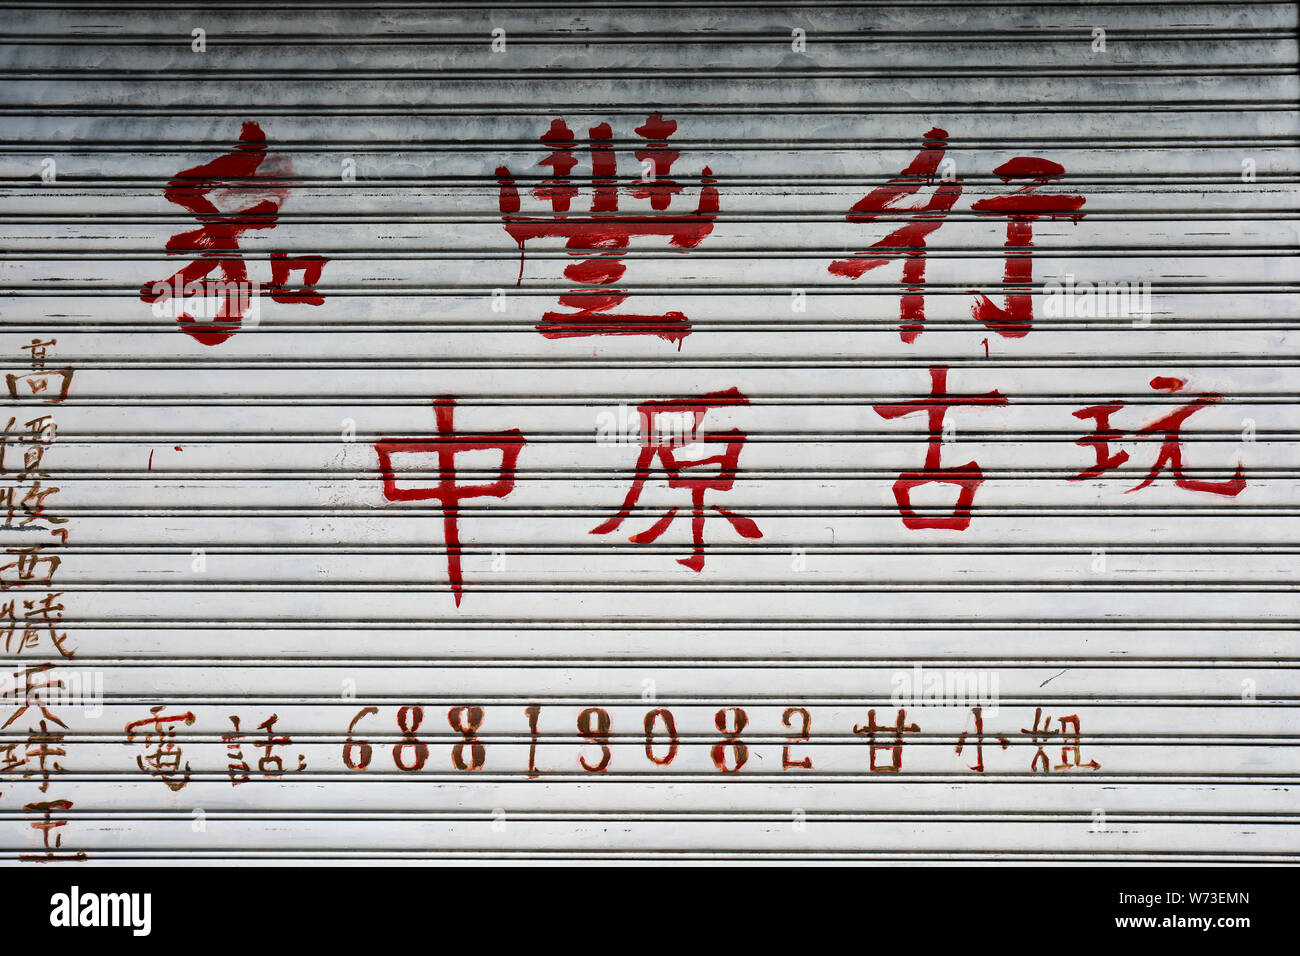 Les caractères chinois rouge sur une porte d'enroulement à Sheung Wan, Hong Kong Banque D'Images